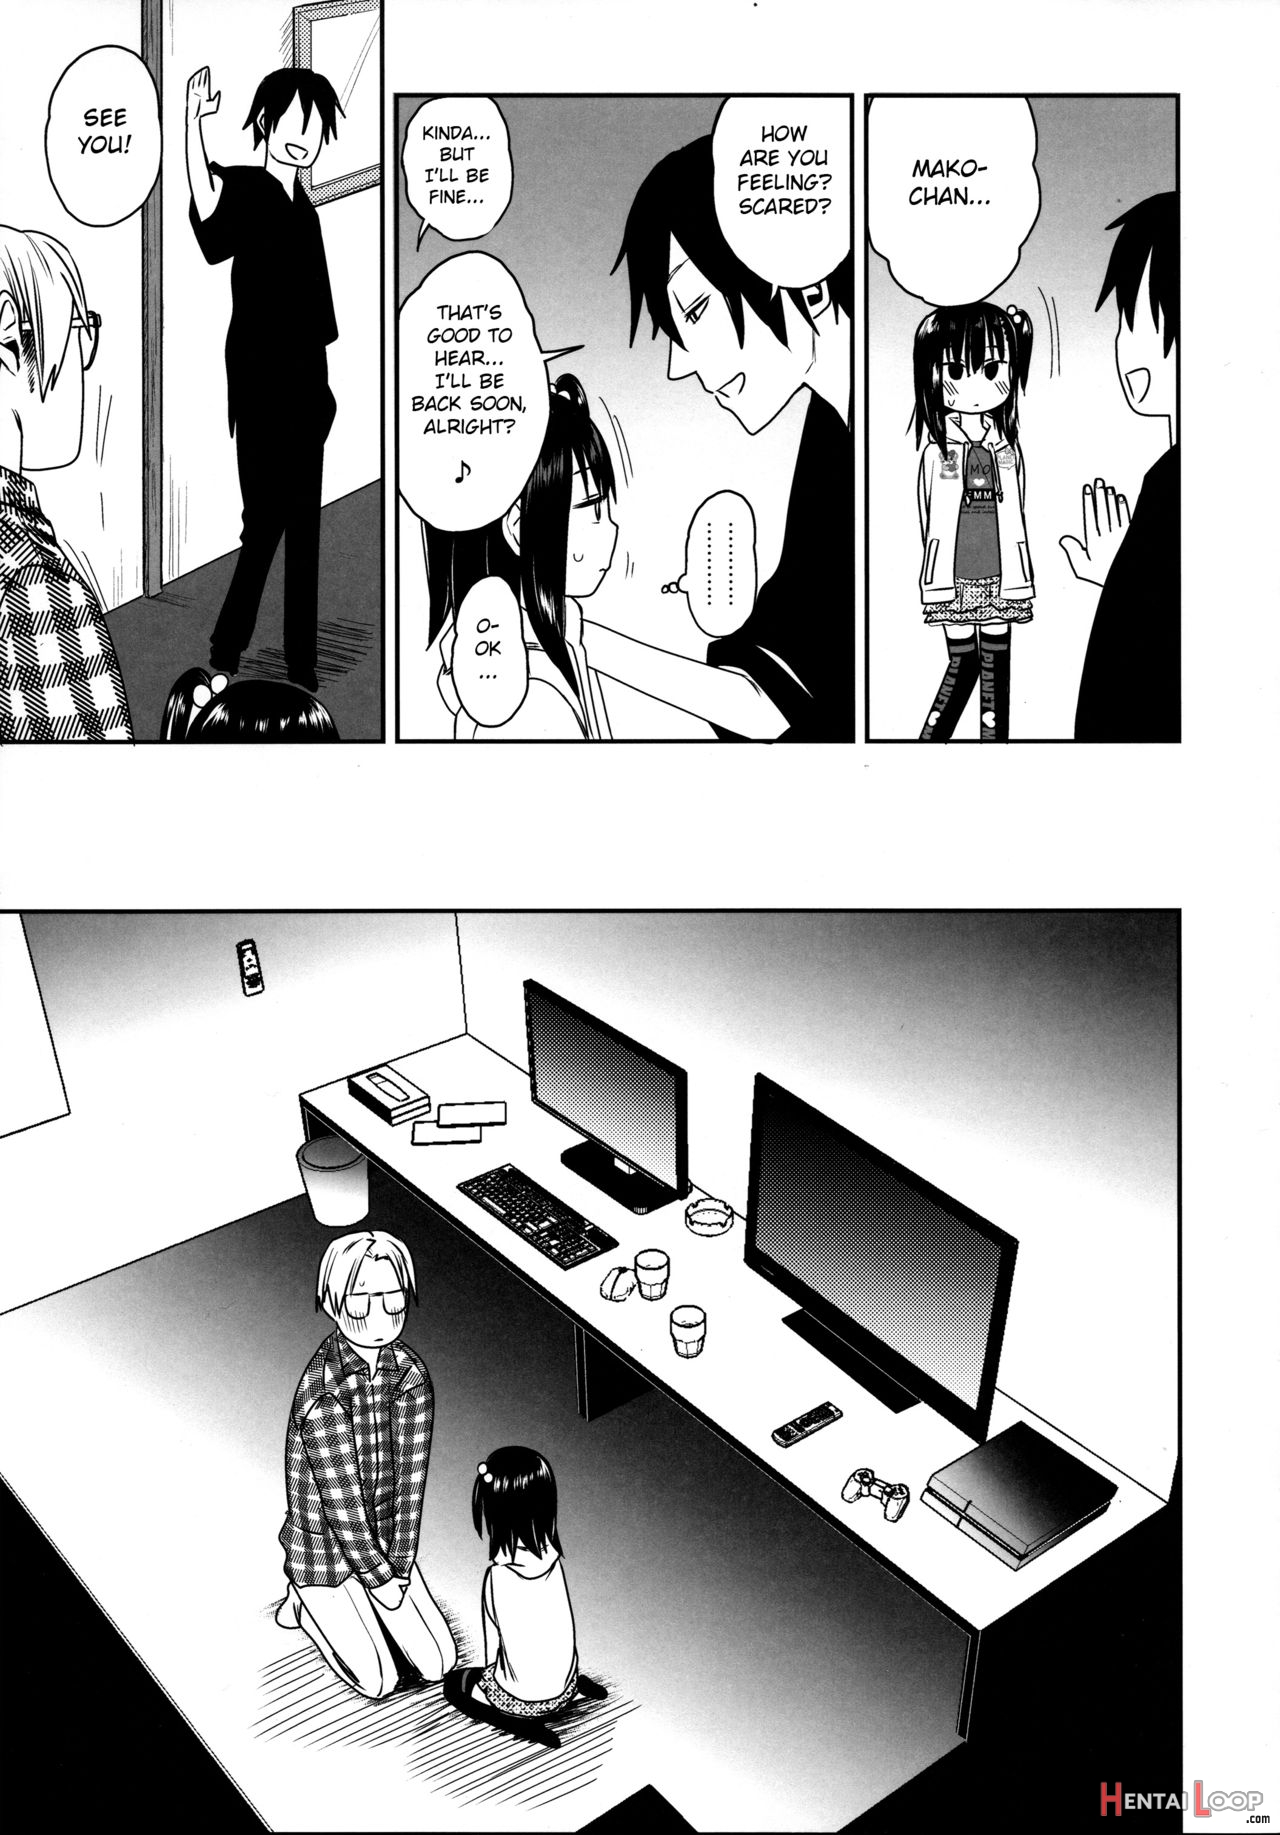 Tonari No Mako-chan Season 2 Vol. 2 page 15